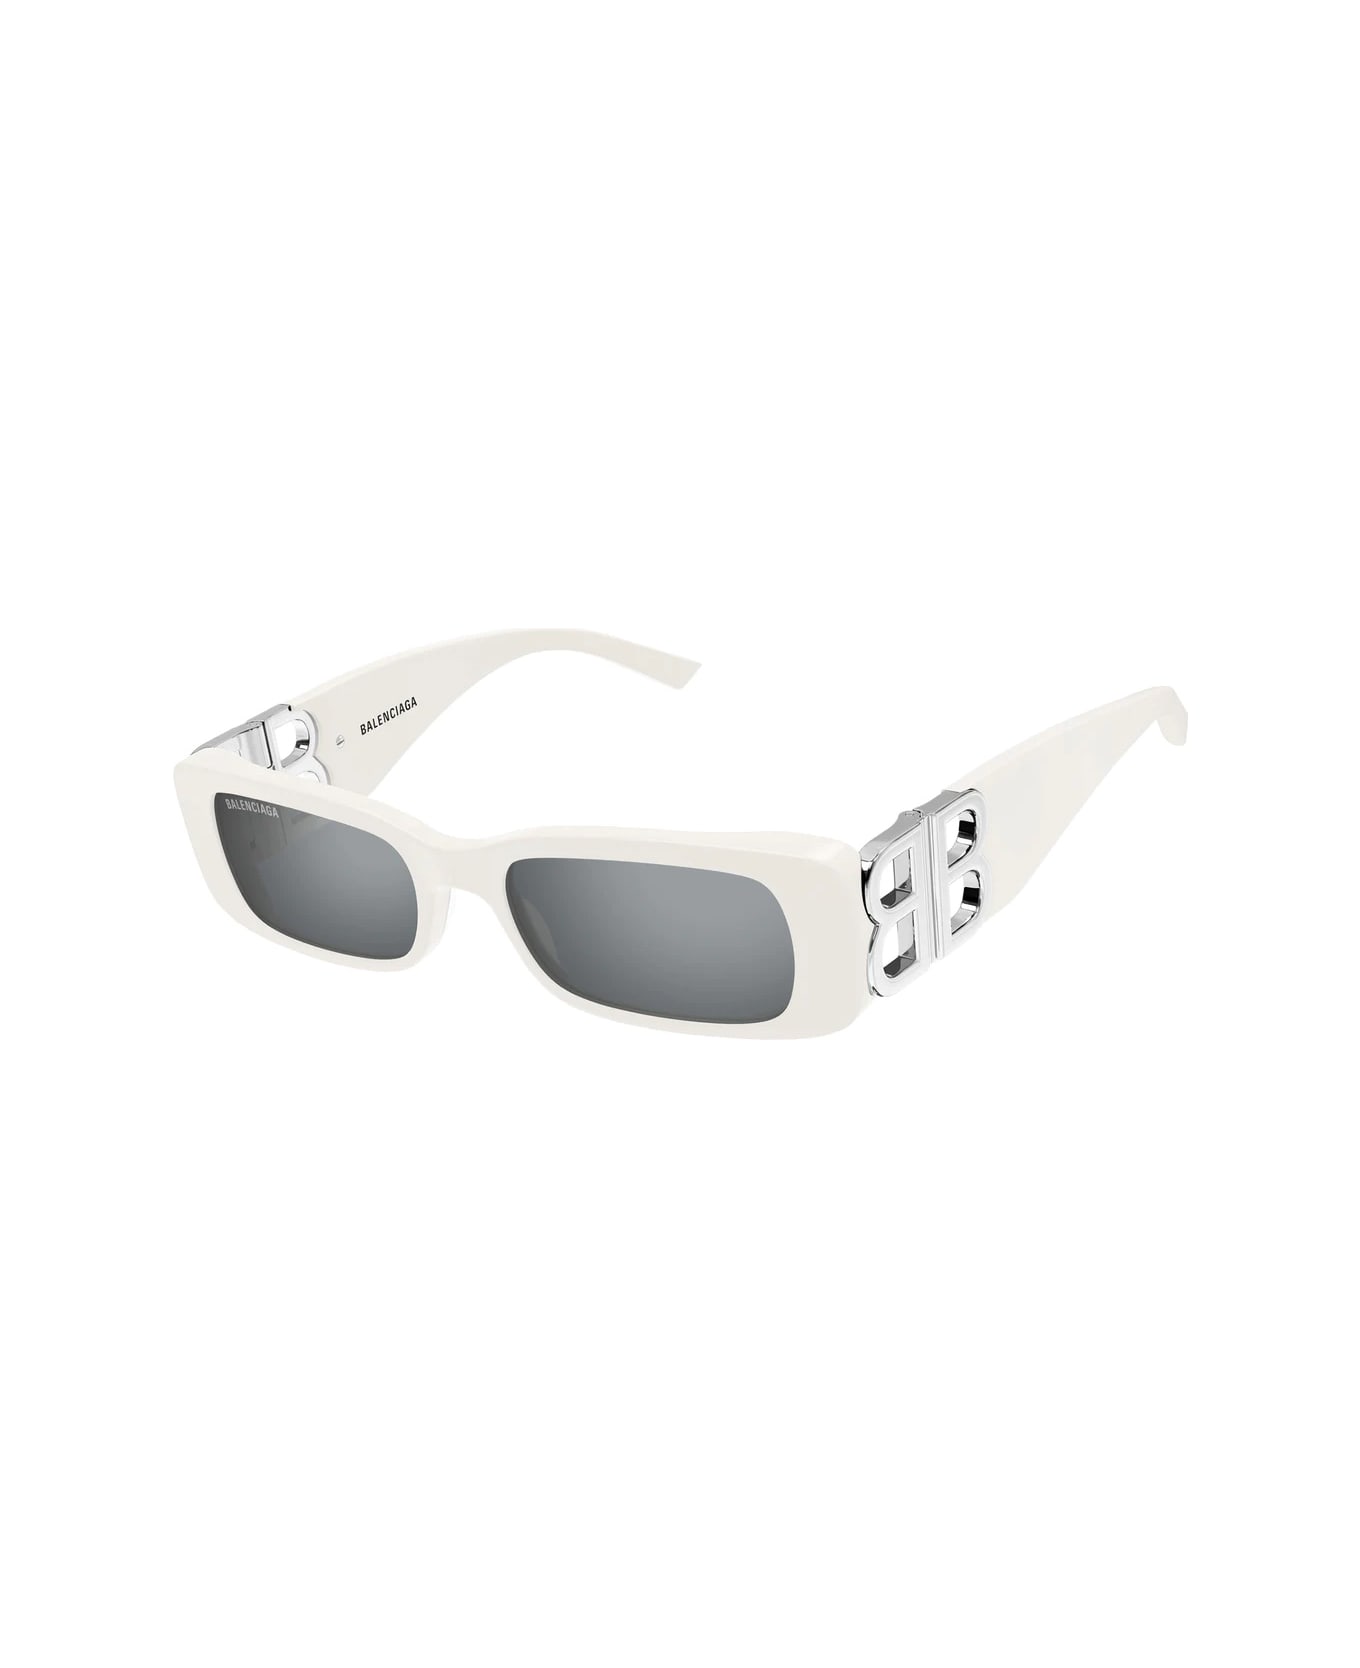 Balenciaga Eyewear Bb0096s 020 52G Sunglasses - Bianco